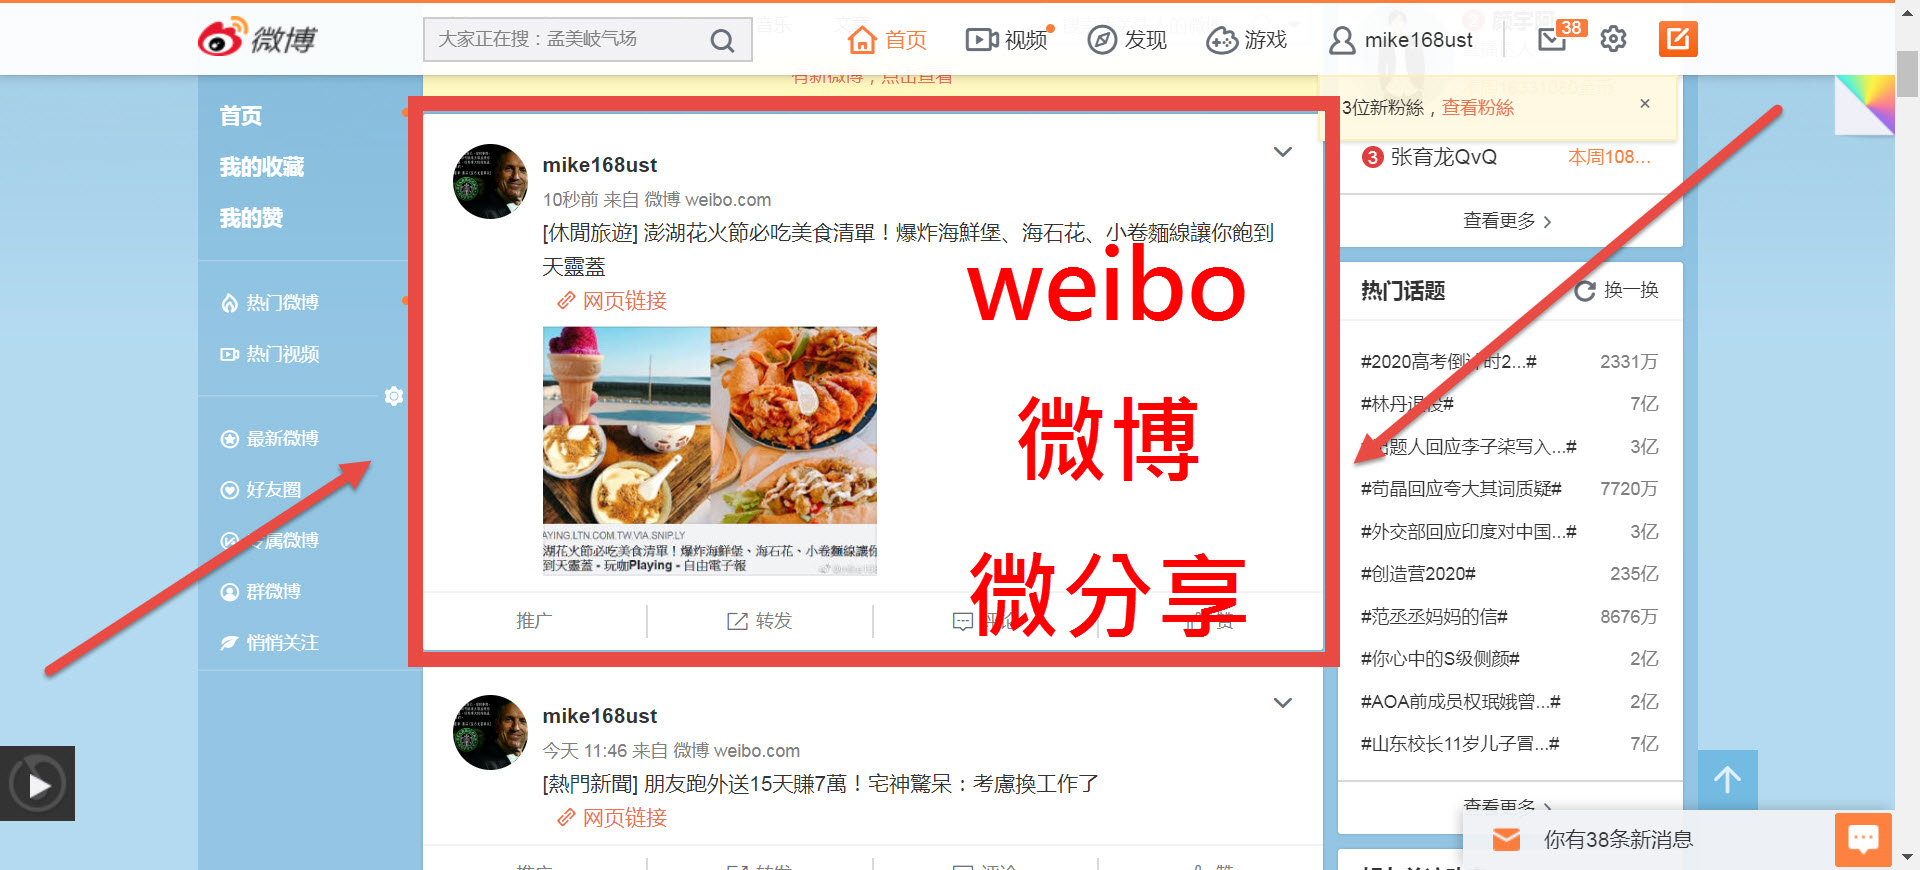 23社群 P微分享-weibo微博交友社群